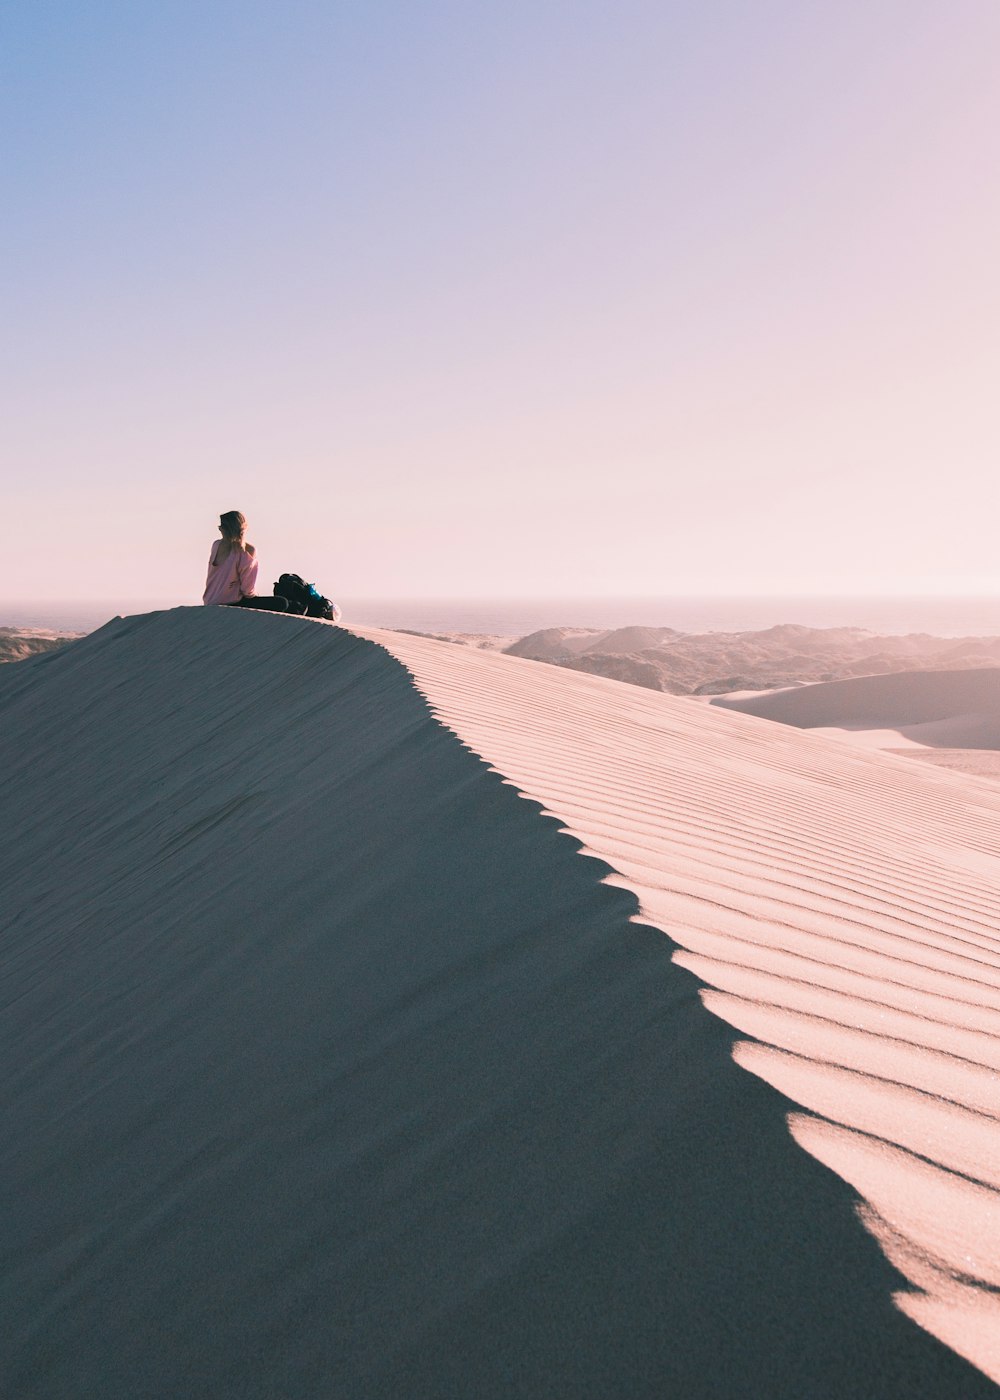 Drittelregel Fotografie einer Person, die in der Wüste sitzt